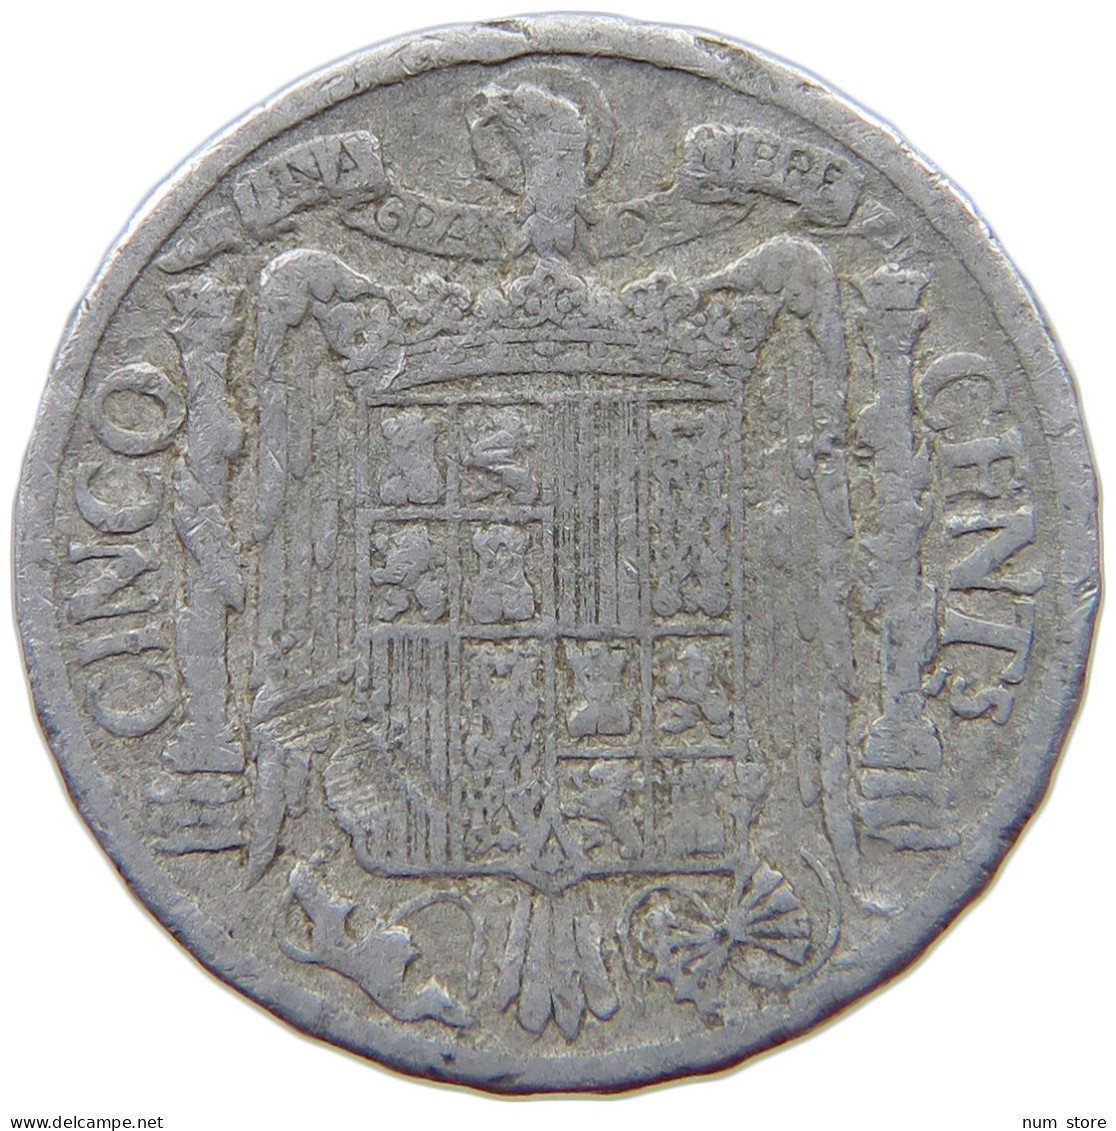 SPAIN 5 CENTIMOS 1941 #s069 0655 - 5 Céntimos